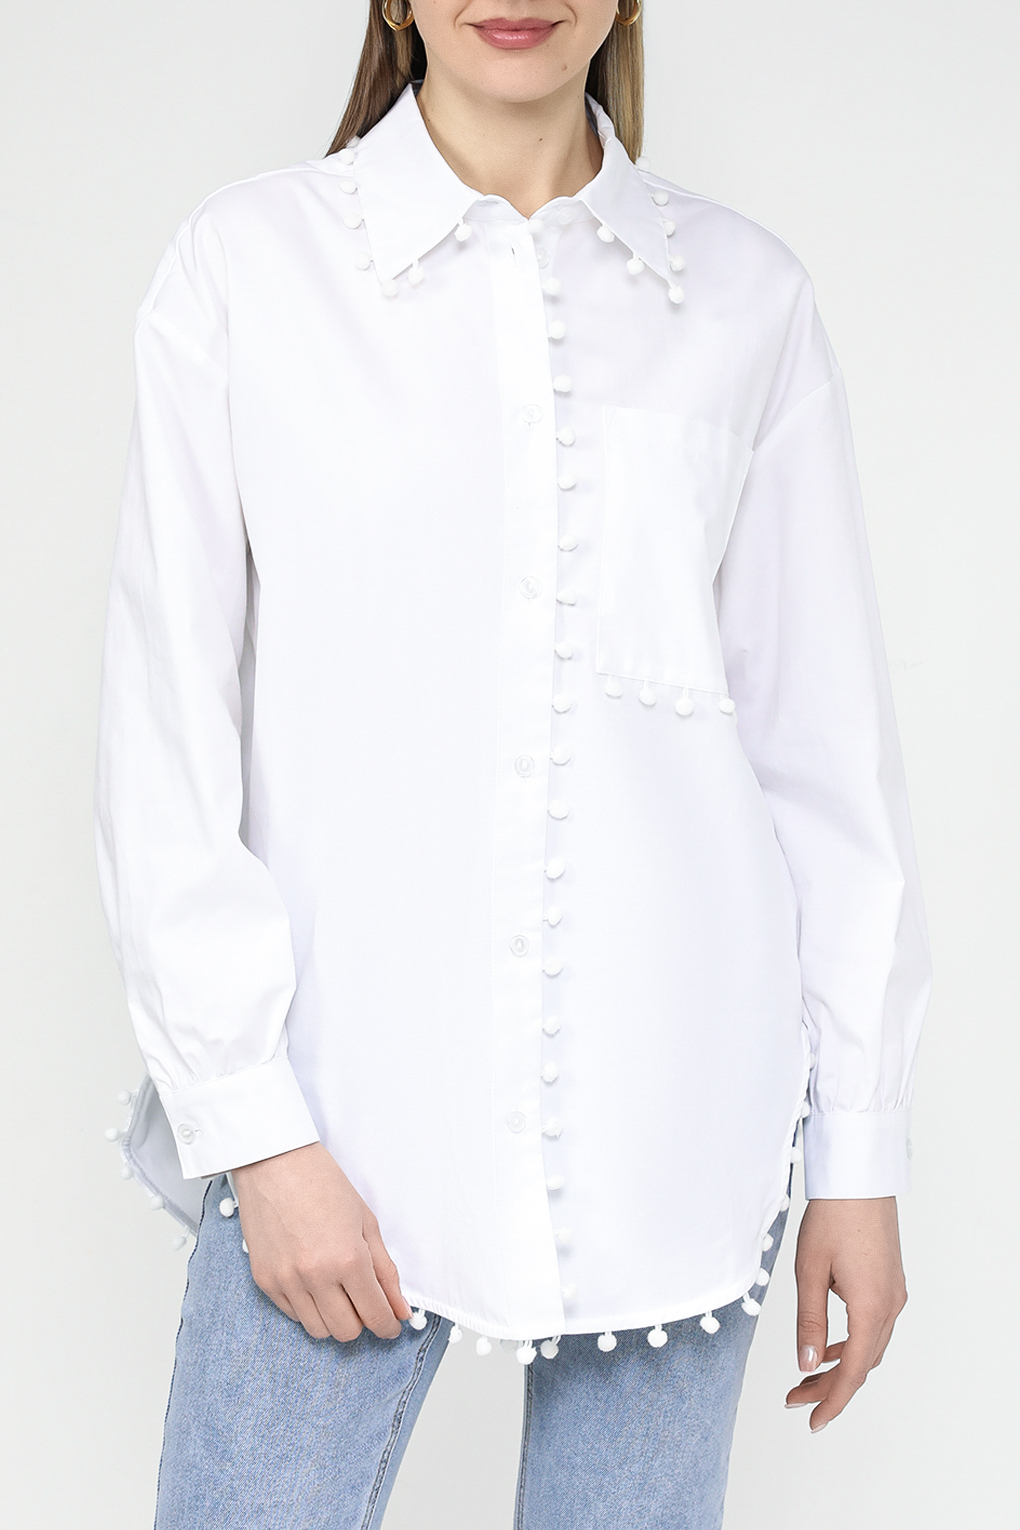 Рубашка женская Belucci BL24043592CD белая S